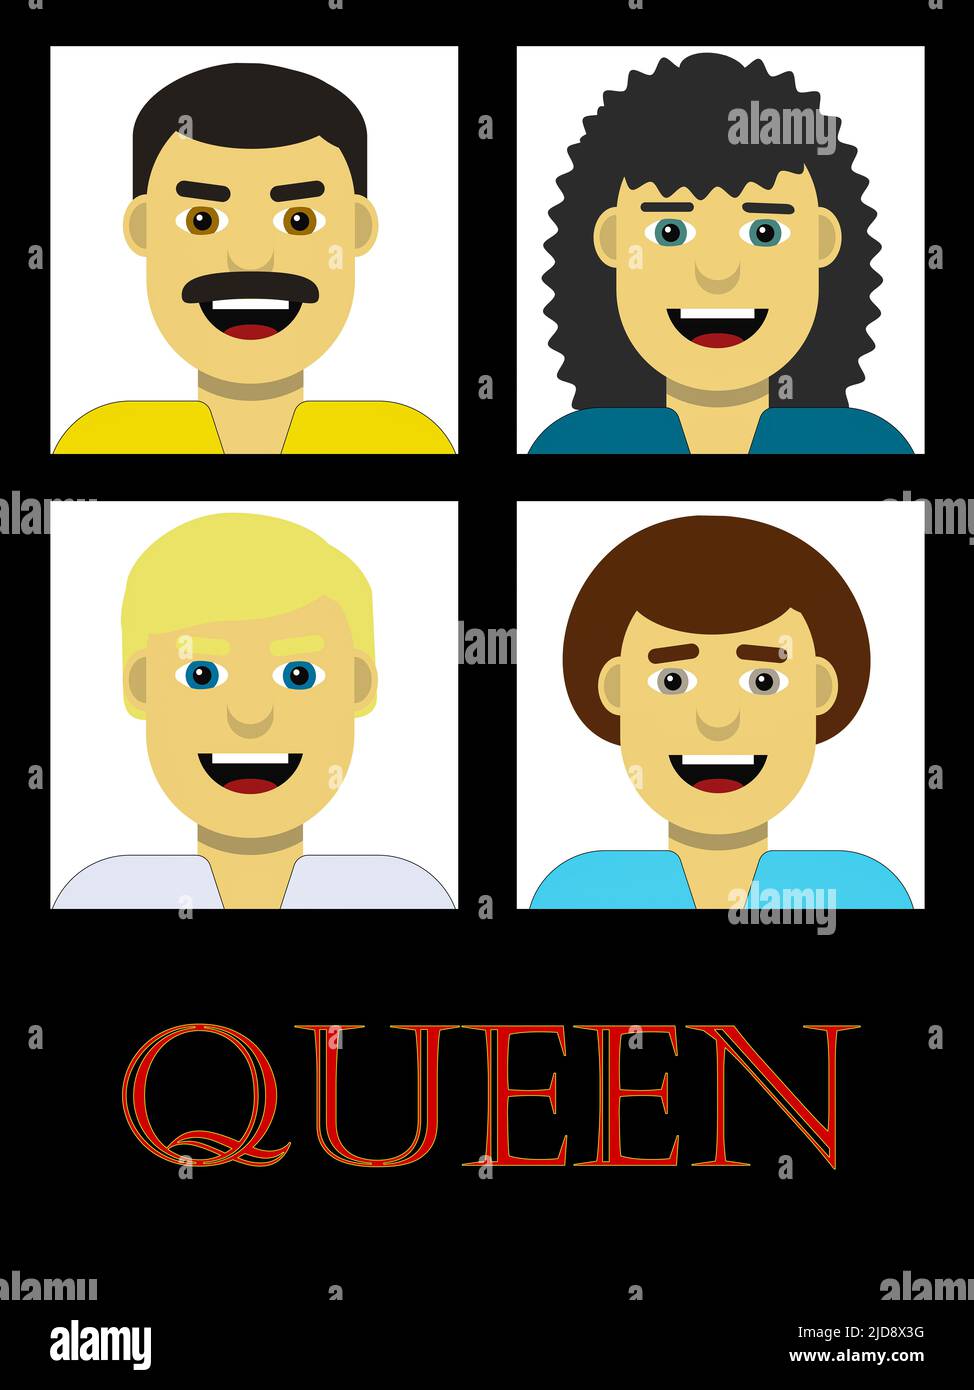 Affiche stylisée du groupe de rock Queen avec Freddie Mercury, Brian May, Roger Taylor et John Deacon Banque D'Images